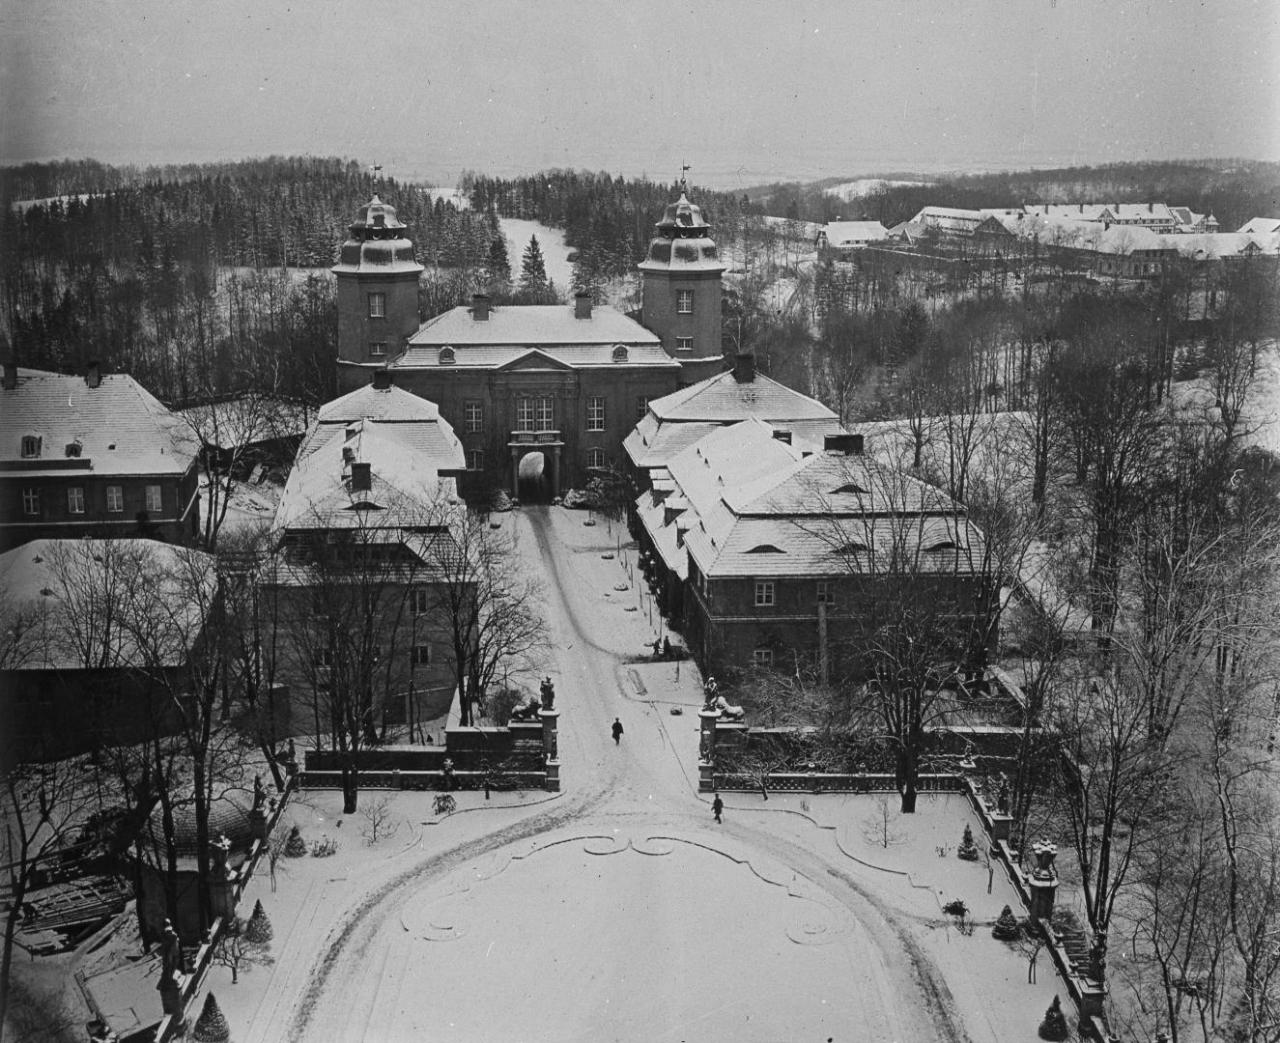 Zamek Książ na początku XX wieku w zimowej szacie. Foto autorstwa Louisa Hardouina z kolekcji Zamku Książ w Wałbrzychu